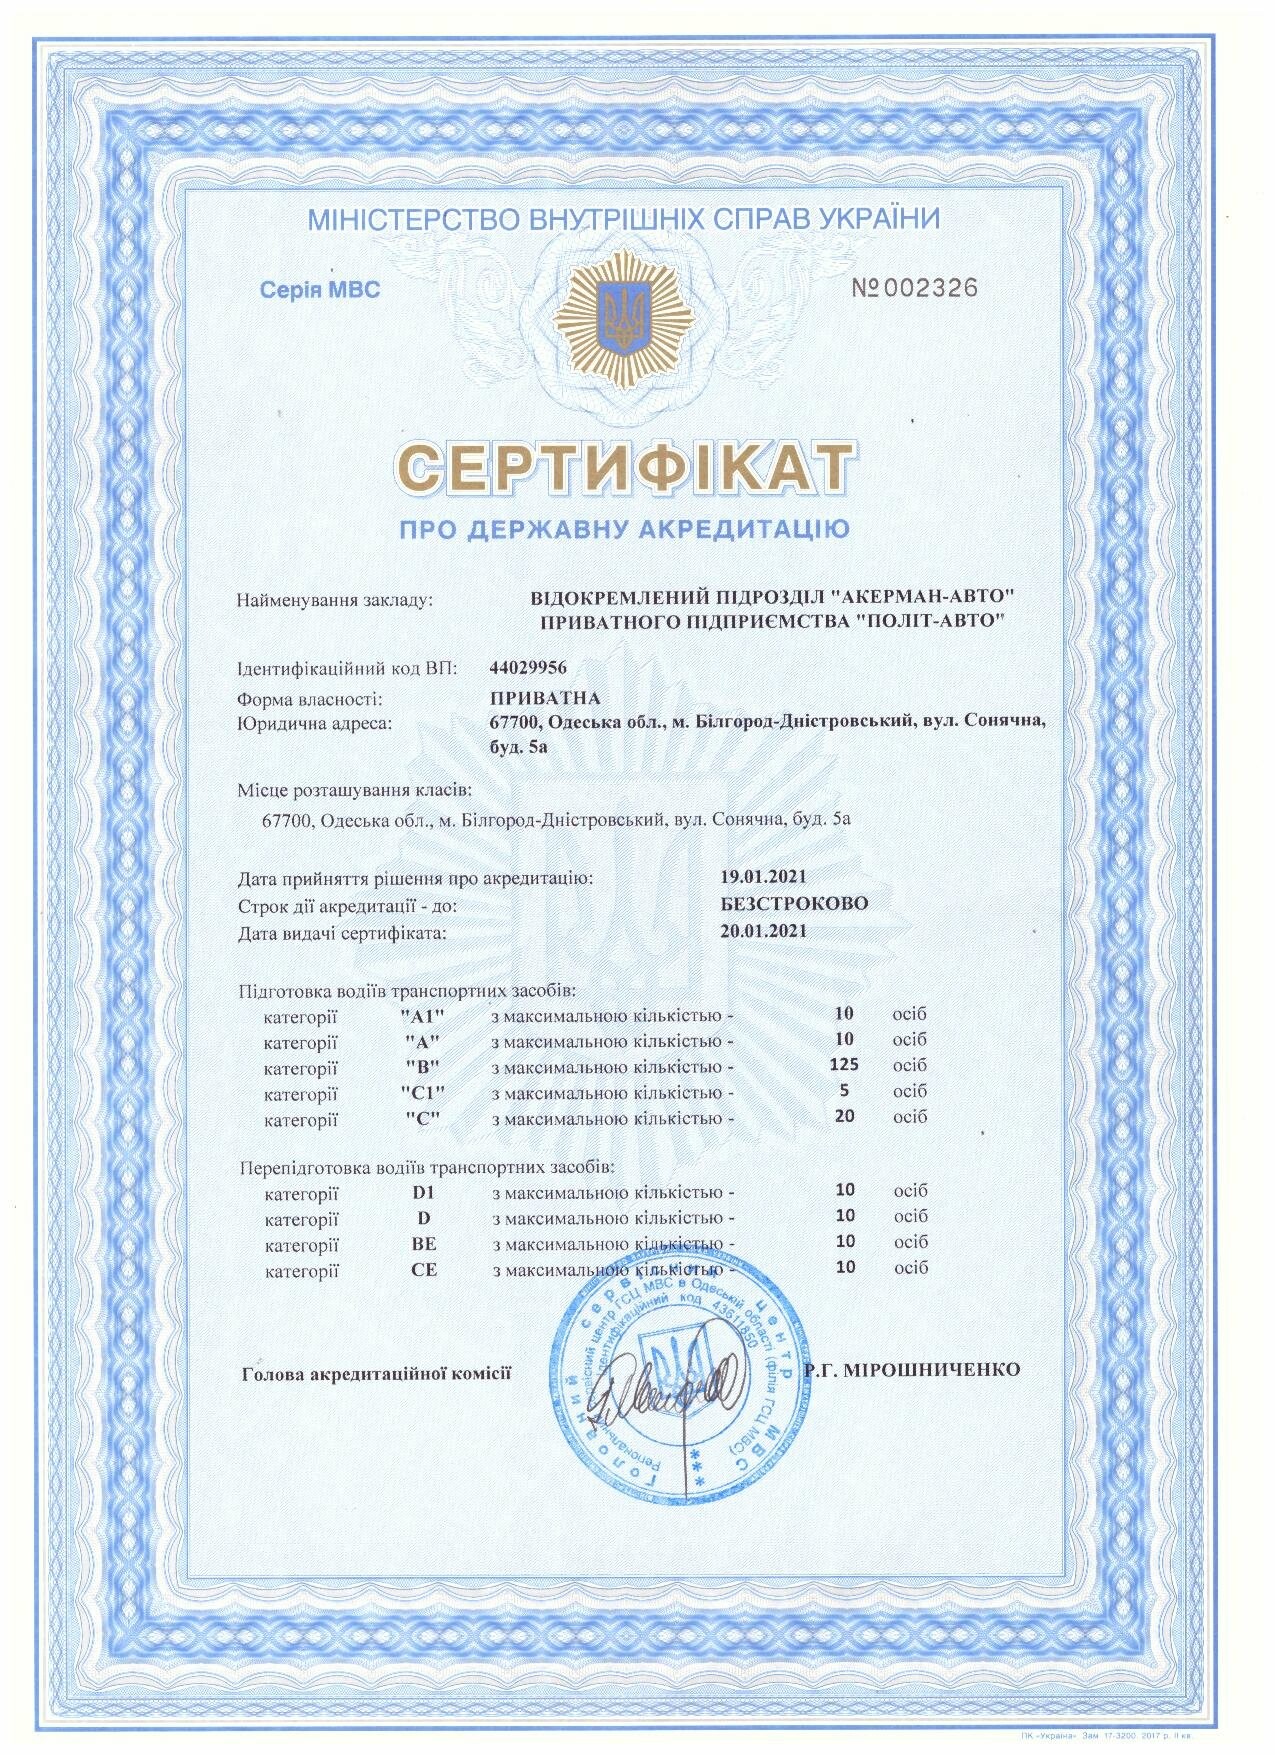 Сертифікати про державну акредитацію, фото-1